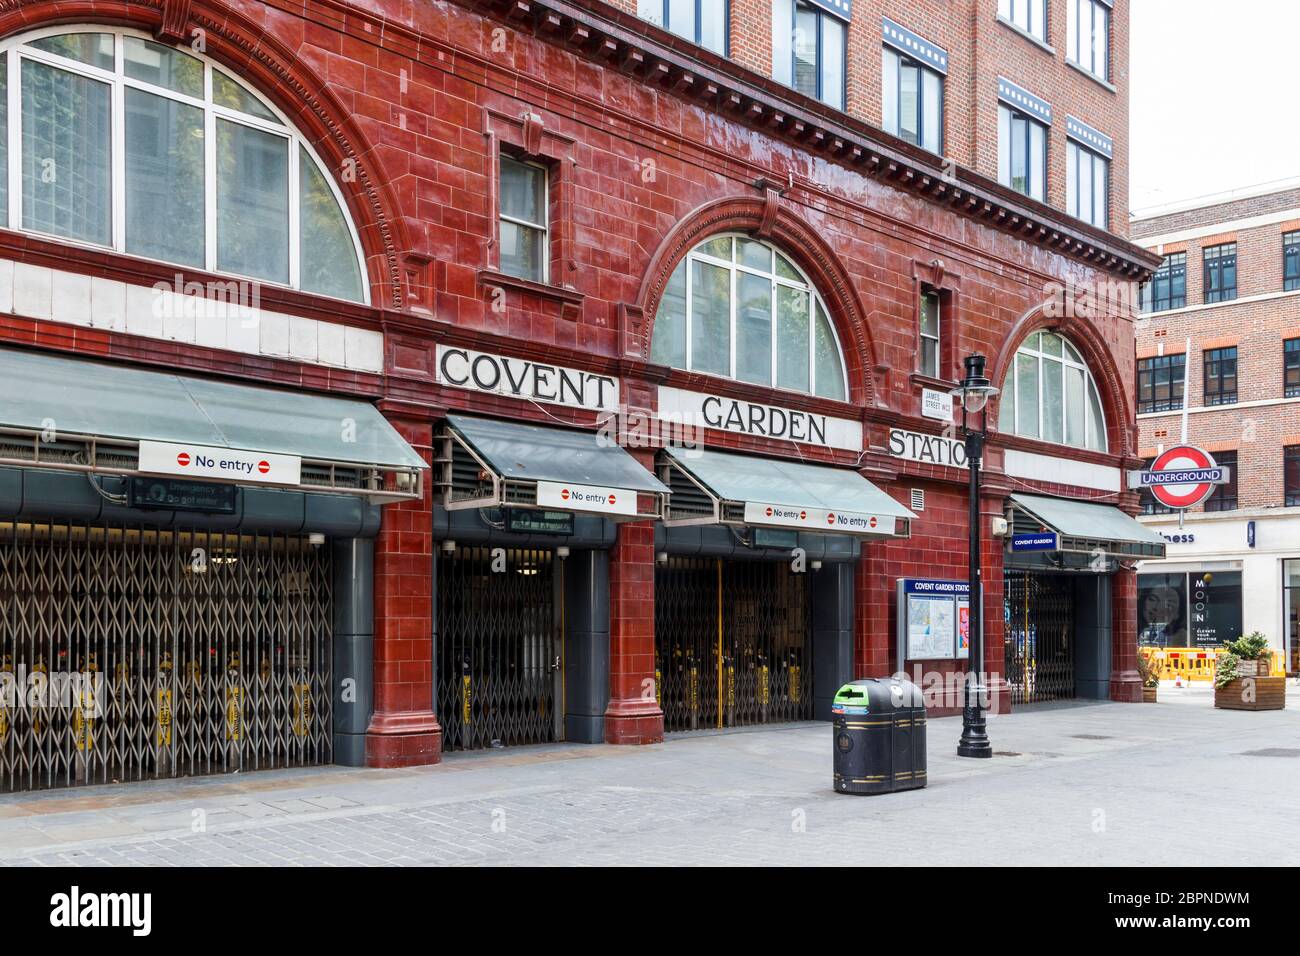 La stazione della metropolitana di Covent Garden, normalmente occupata, è chiusa durante il blocco della pandemia di coronavirus, Londra, Regno Unito Foto Stock